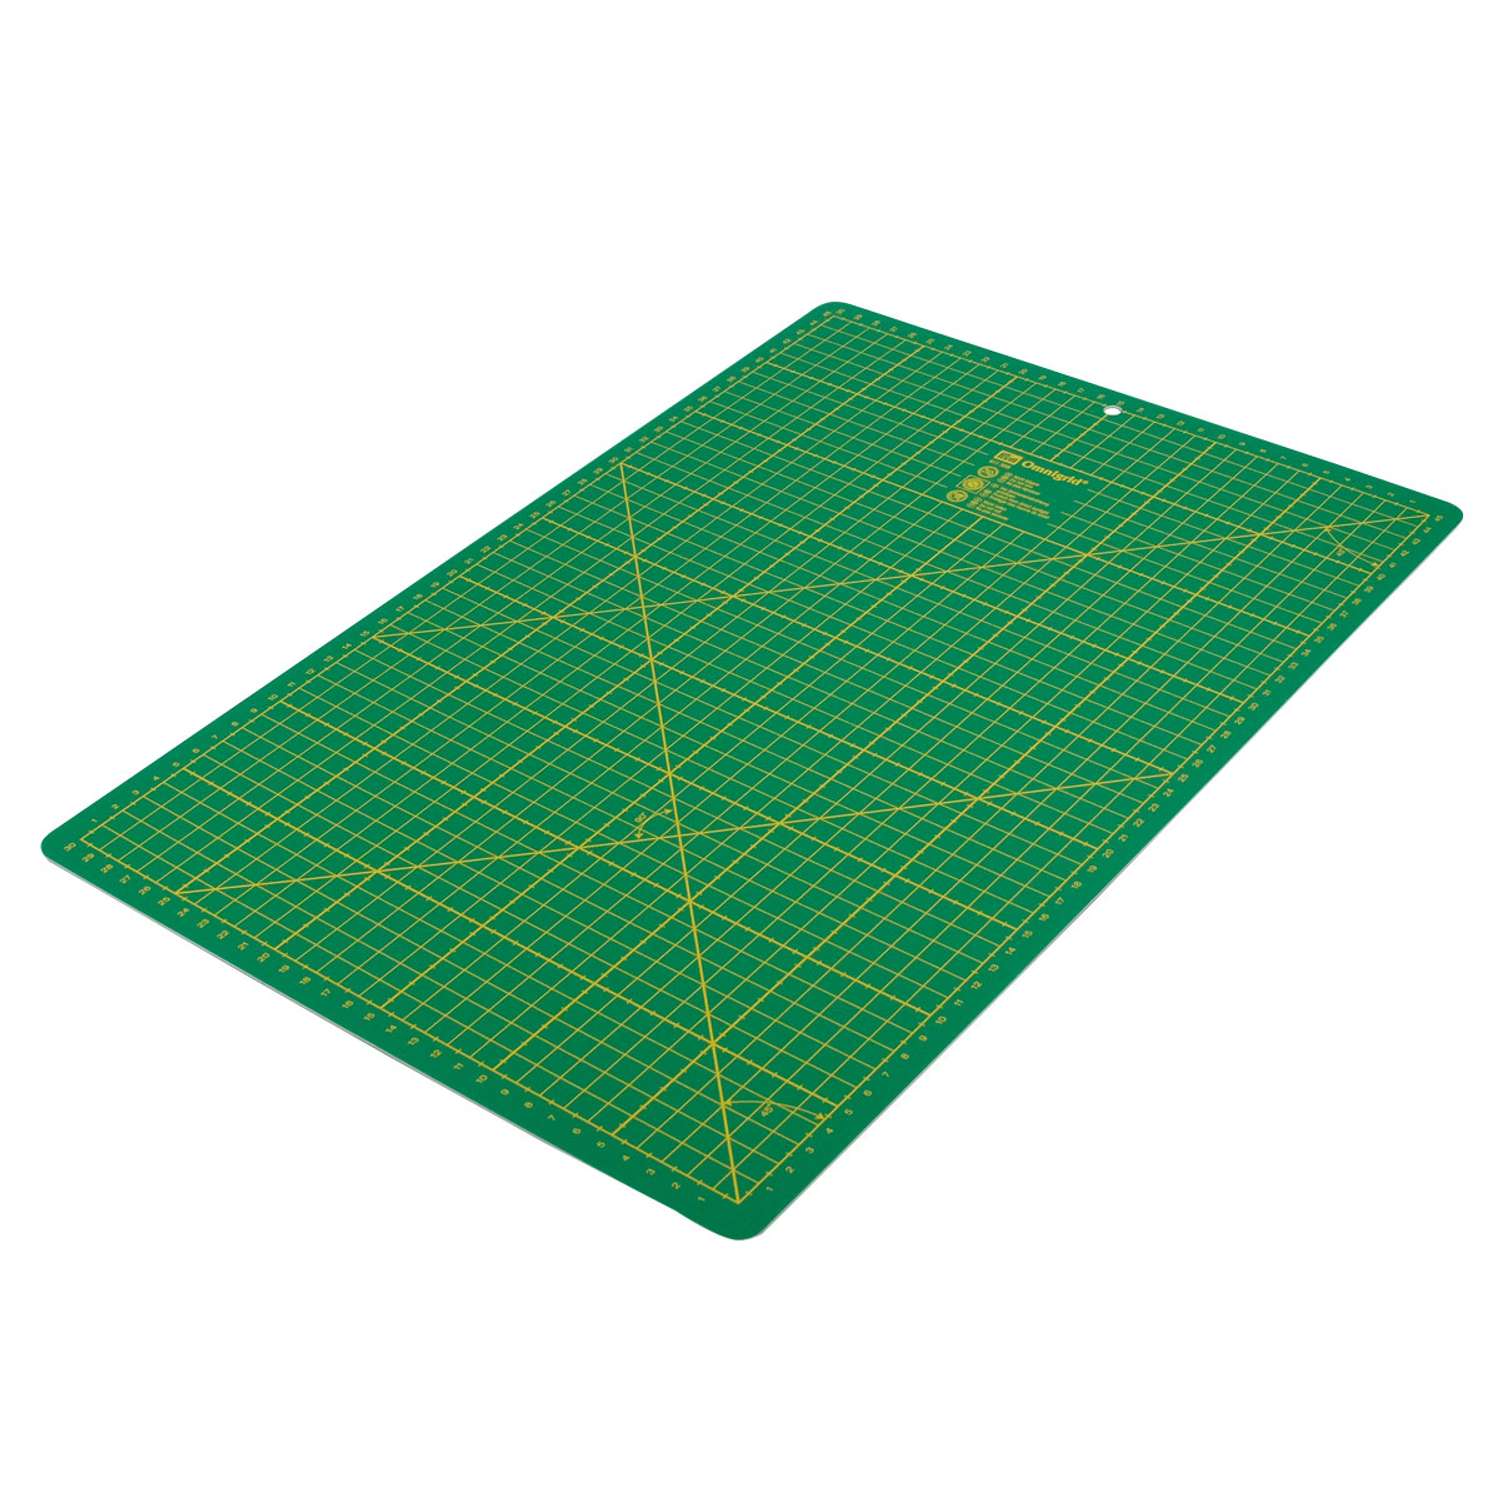 Коврик - подложка раскройный Prym мат для резки ткани бумаги самовосстанавливающийся с разметкой зеленый 45 х 30 см 611386 - фото 3